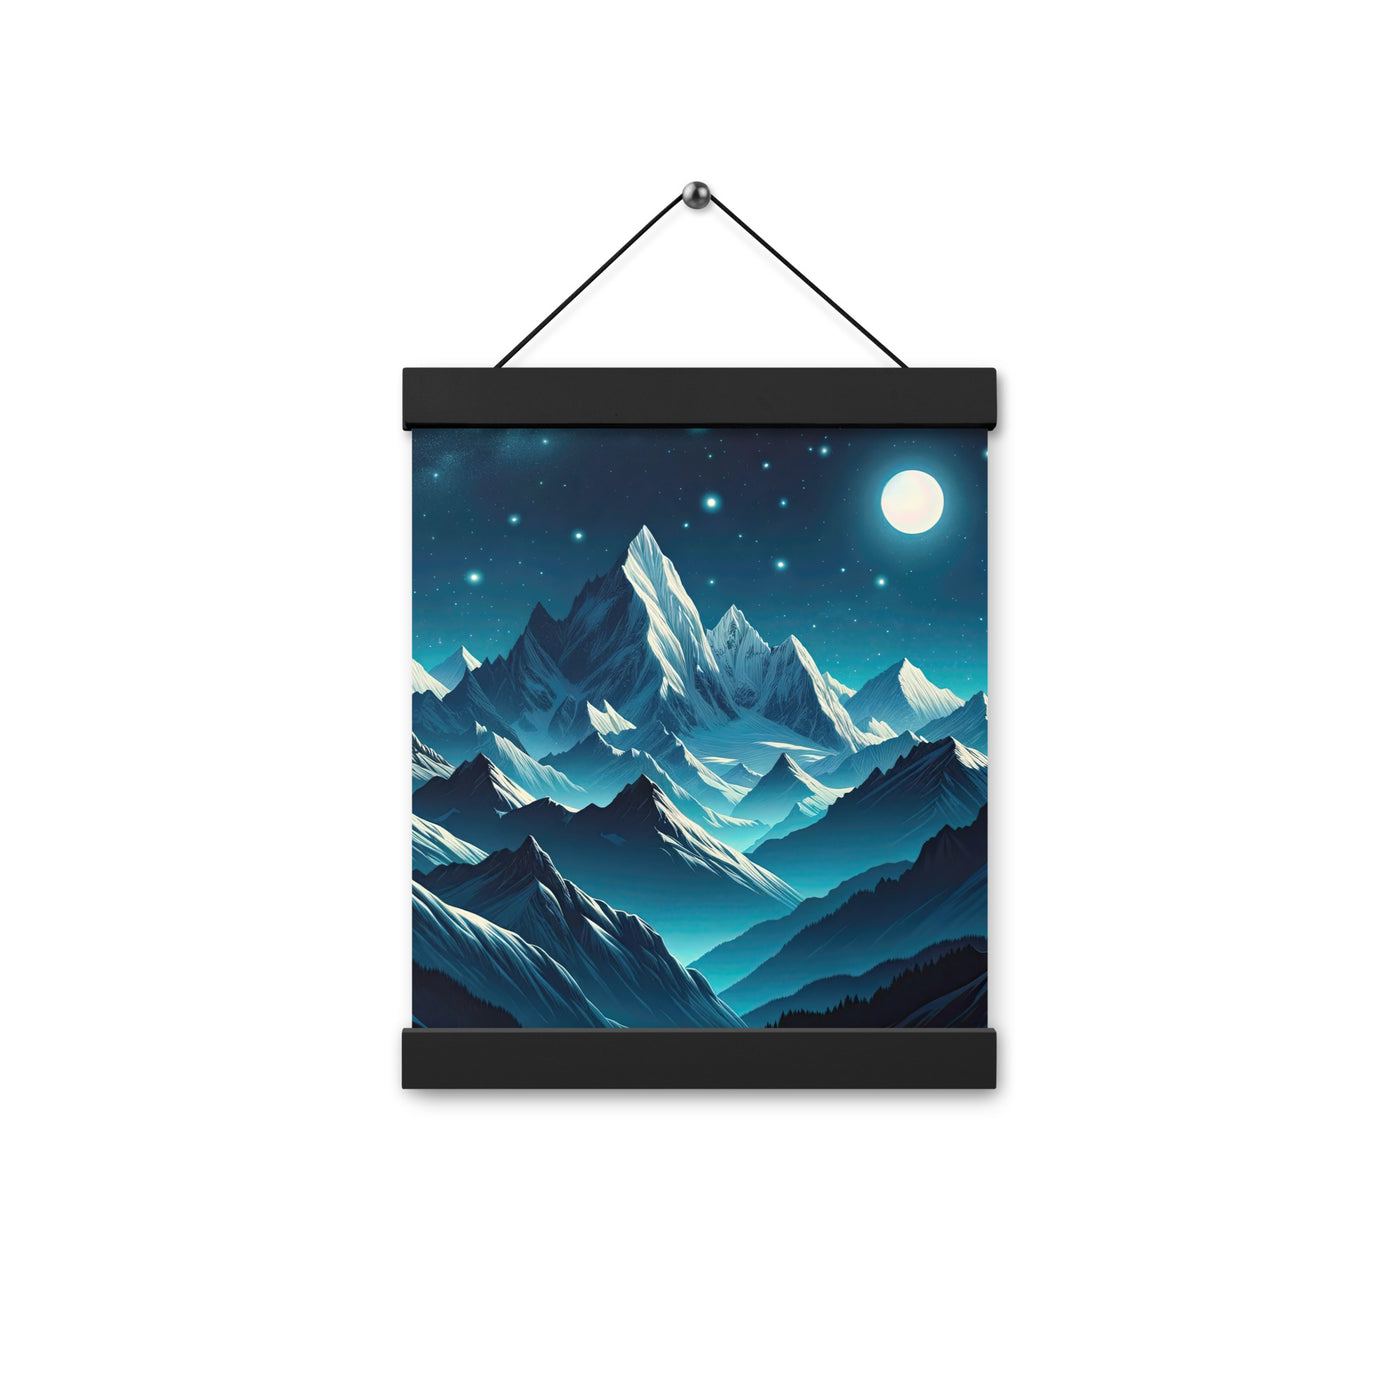 Sternenklare Nacht über den Alpen, Vollmondschein auf Schneegipfeln - Premium Poster mit Aufhängung berge xxx yyy zzz 20.3 x 25.4 cm